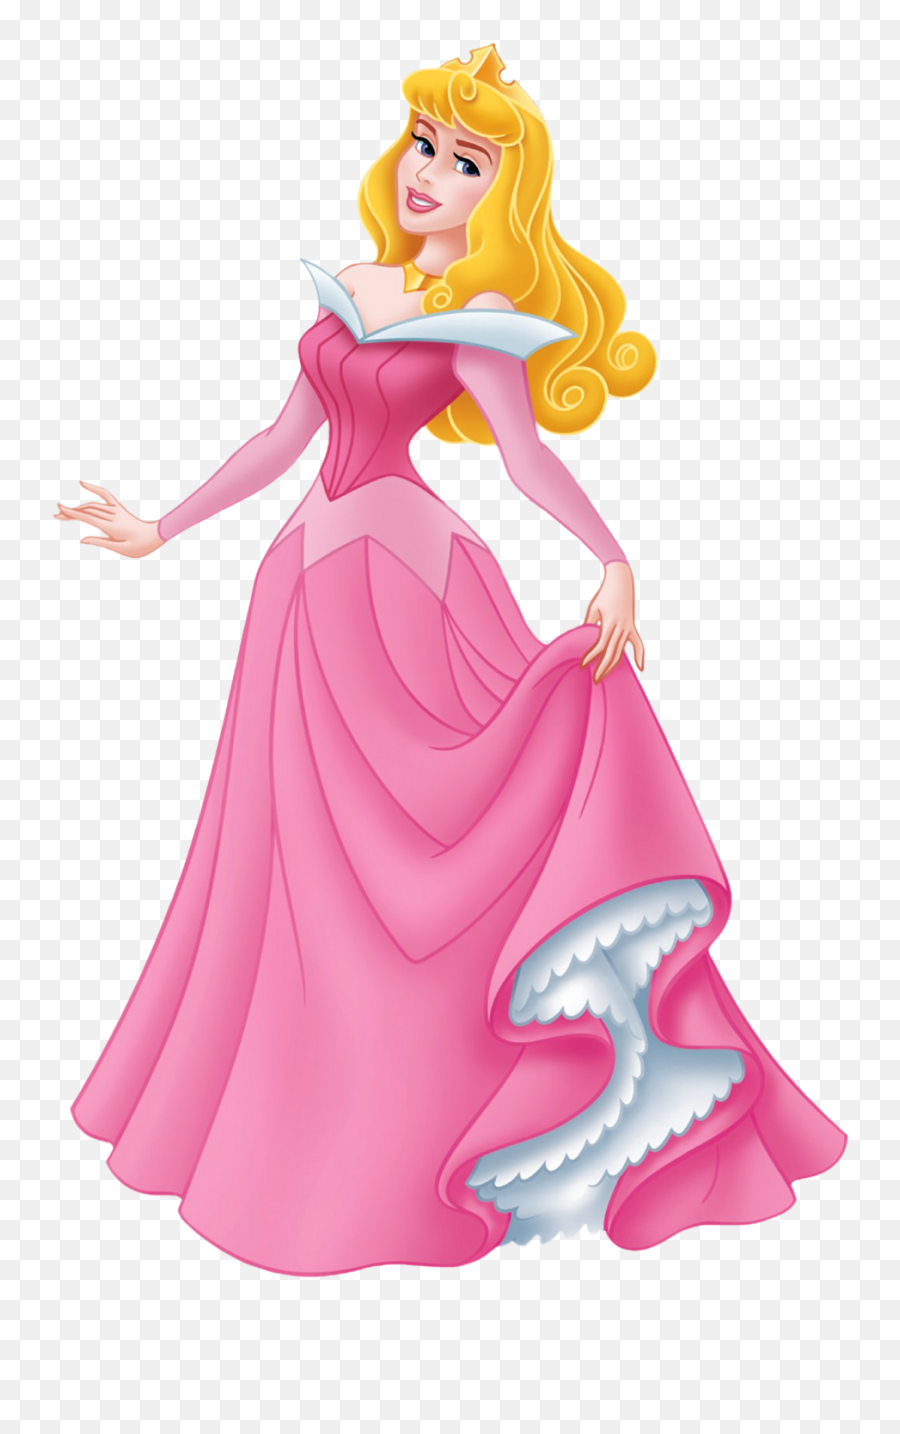 Disney Princess Png Images Princess Emoji,Disney Princess Png